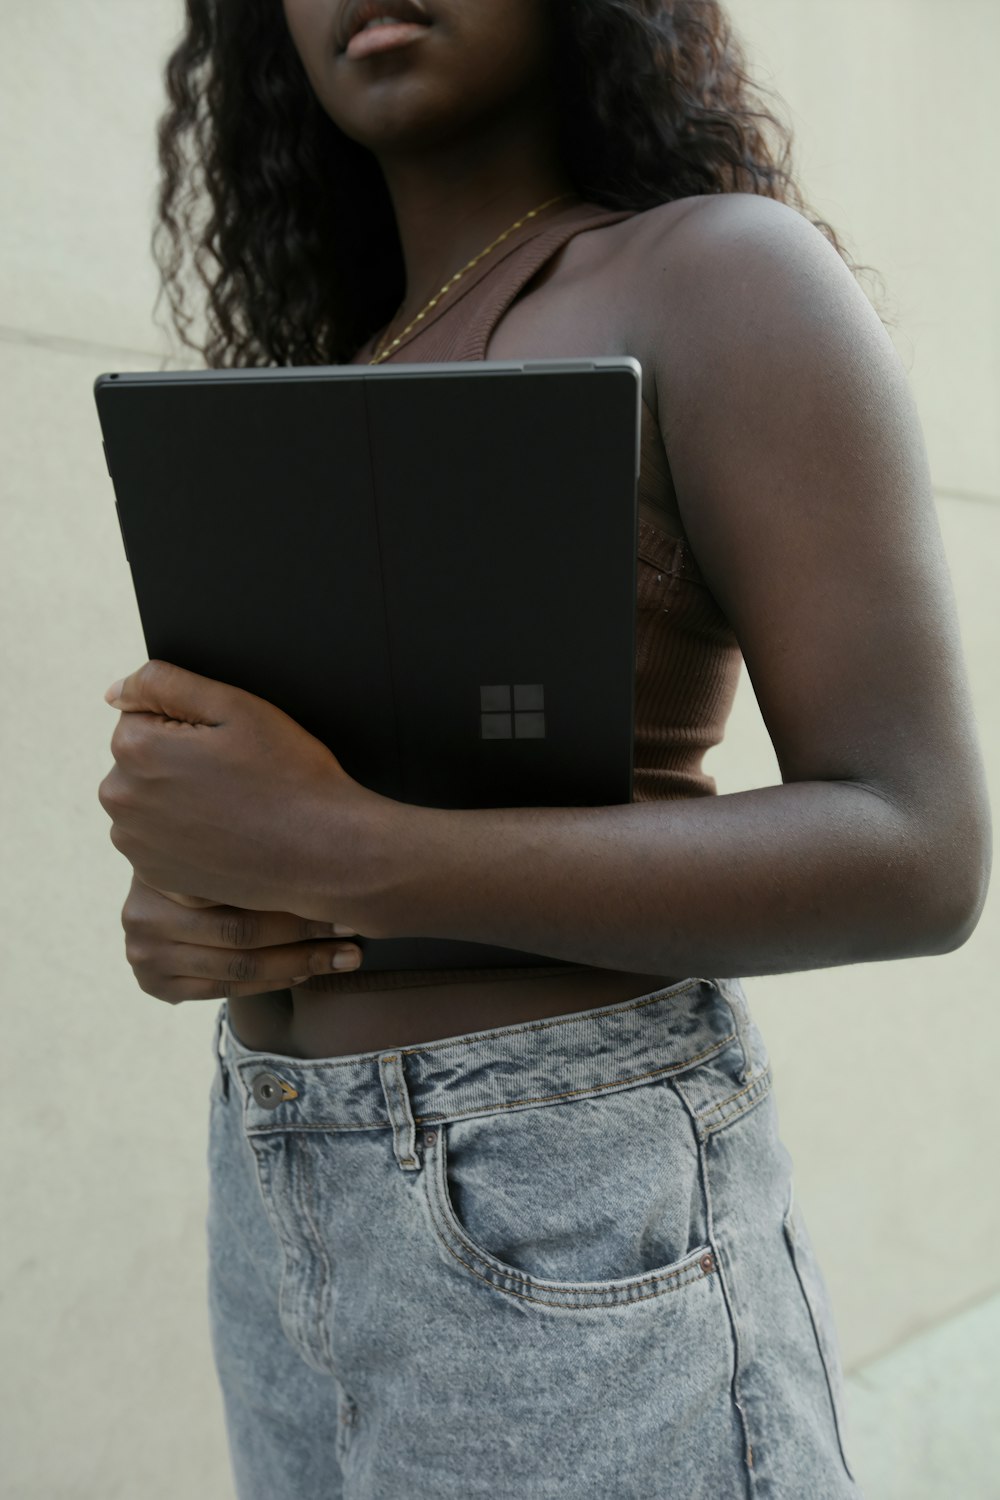 Fêmea que segura um portátil Surface preto